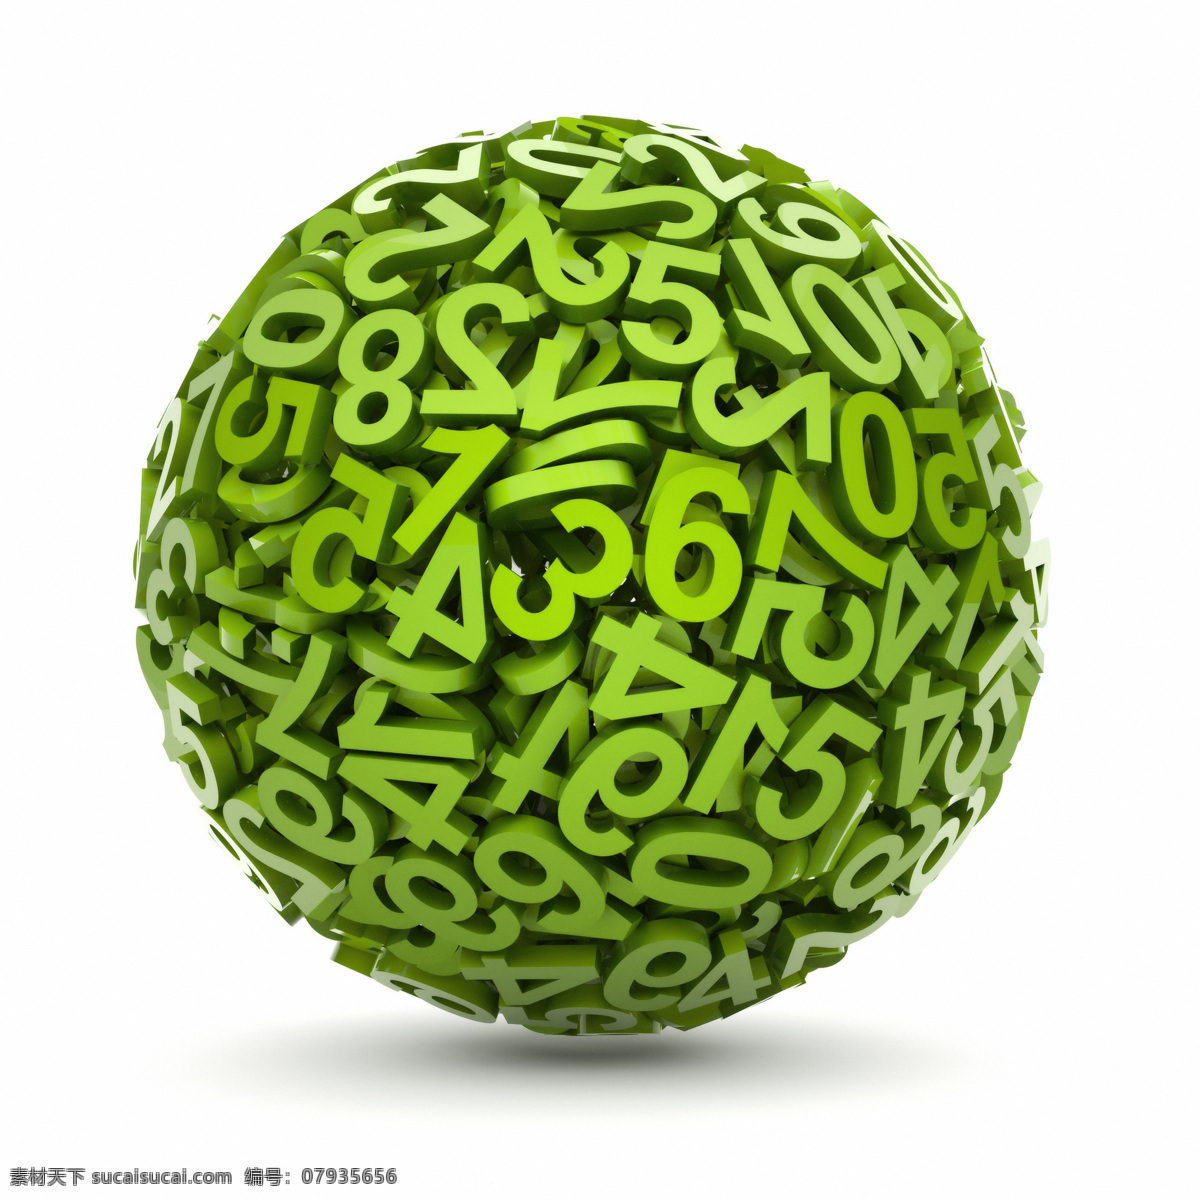 创意 绿色 数字 球形 数字组合 绿色数字 创意球形 组合的数字 其他类别 现代科技